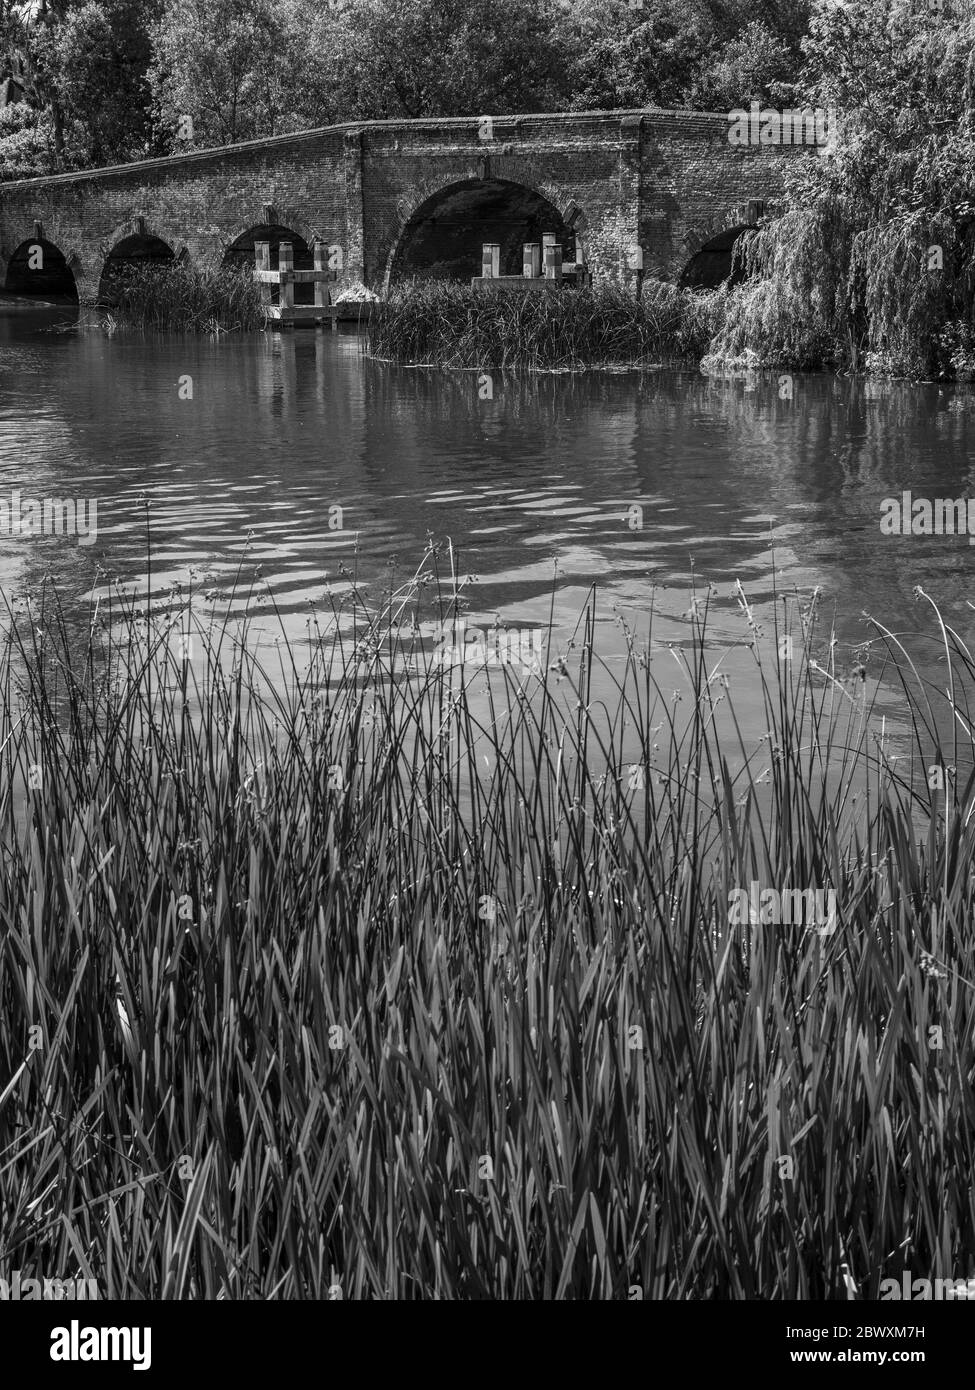 Black and White Idyllic Landscape, Sonning Bridge, Sonning, Reading, Berkshire, England, UK, GB. Stock Photo